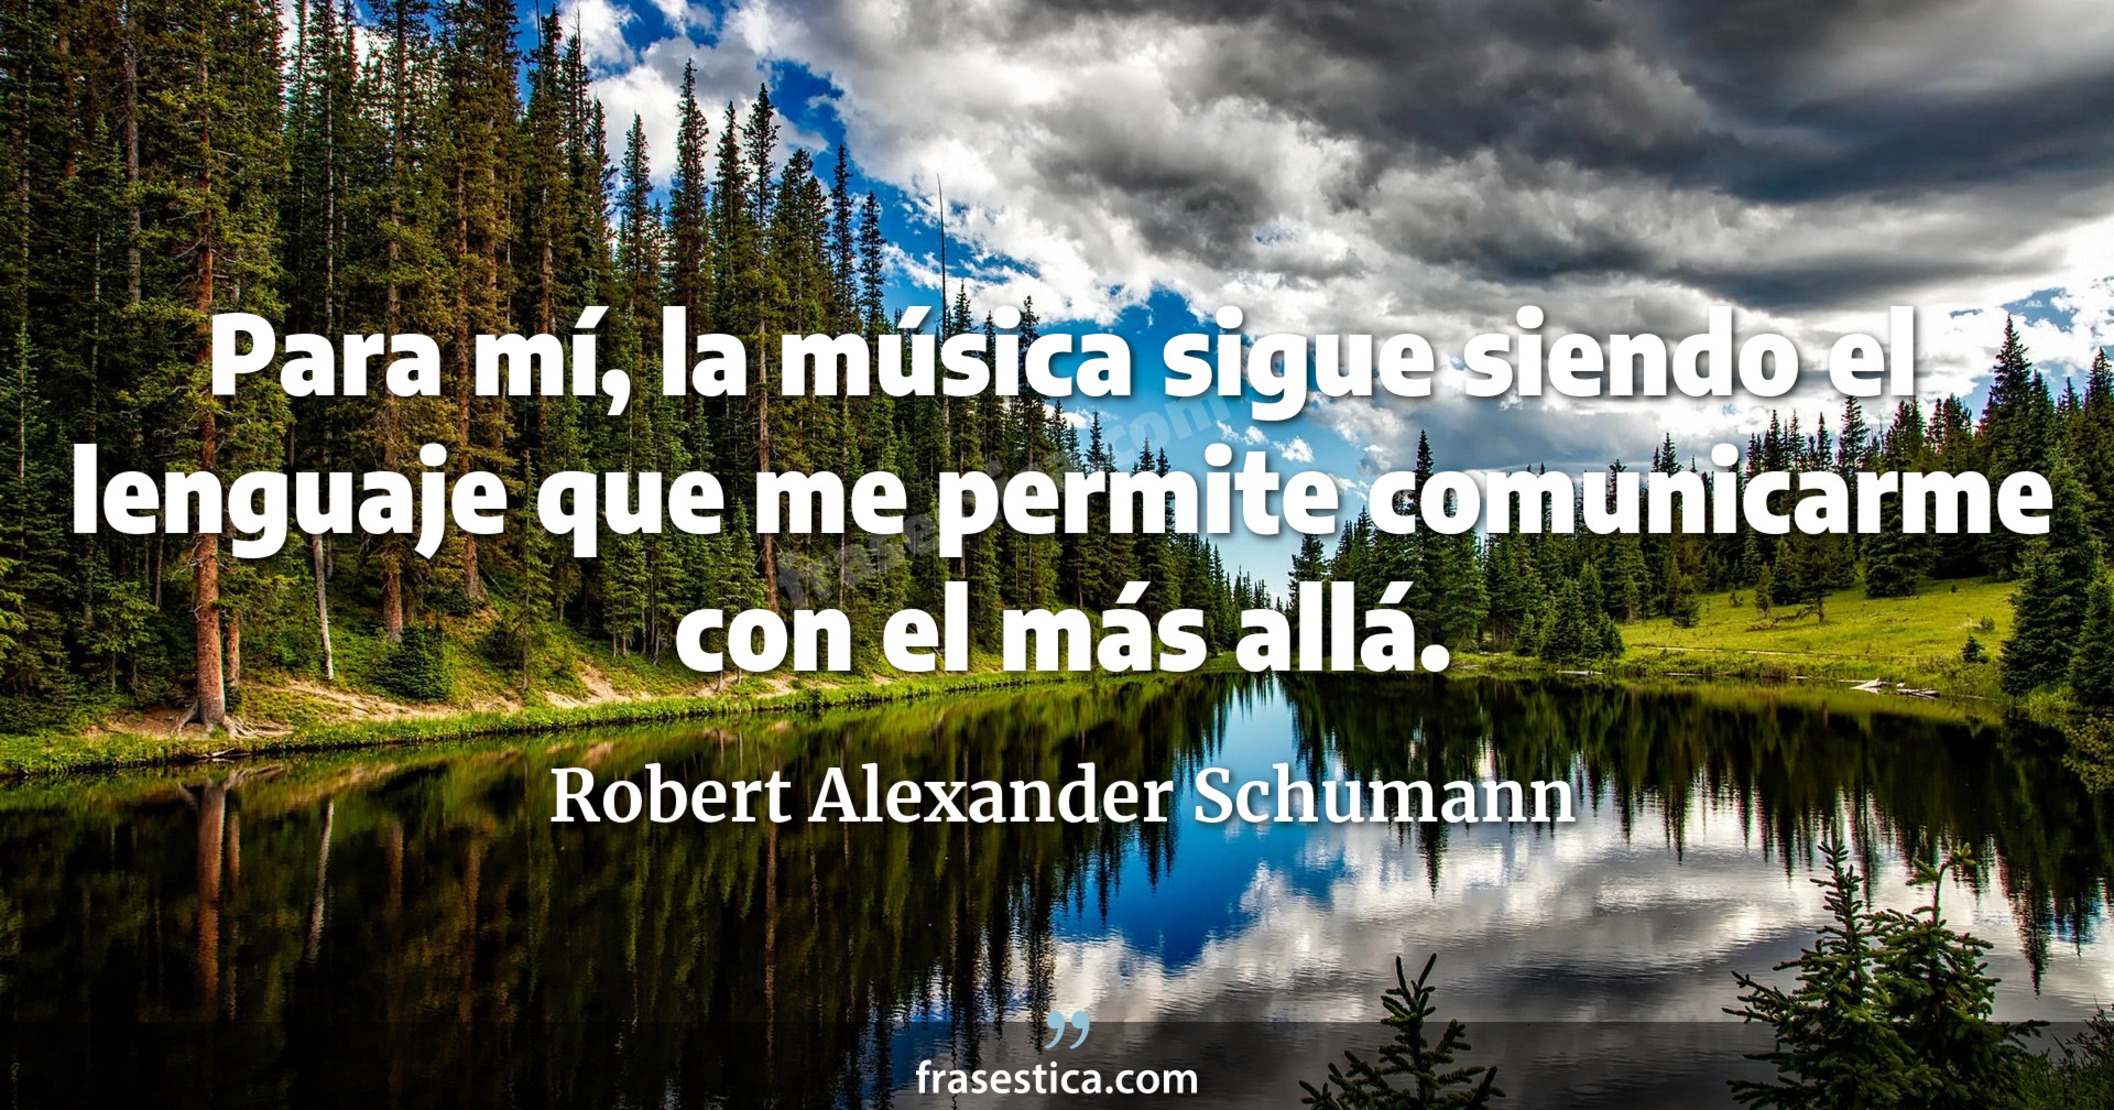 Para mí, la música sigue siendo el lenguaje que me permite comunicarme con el más allá. - Robert Alexander Schumann